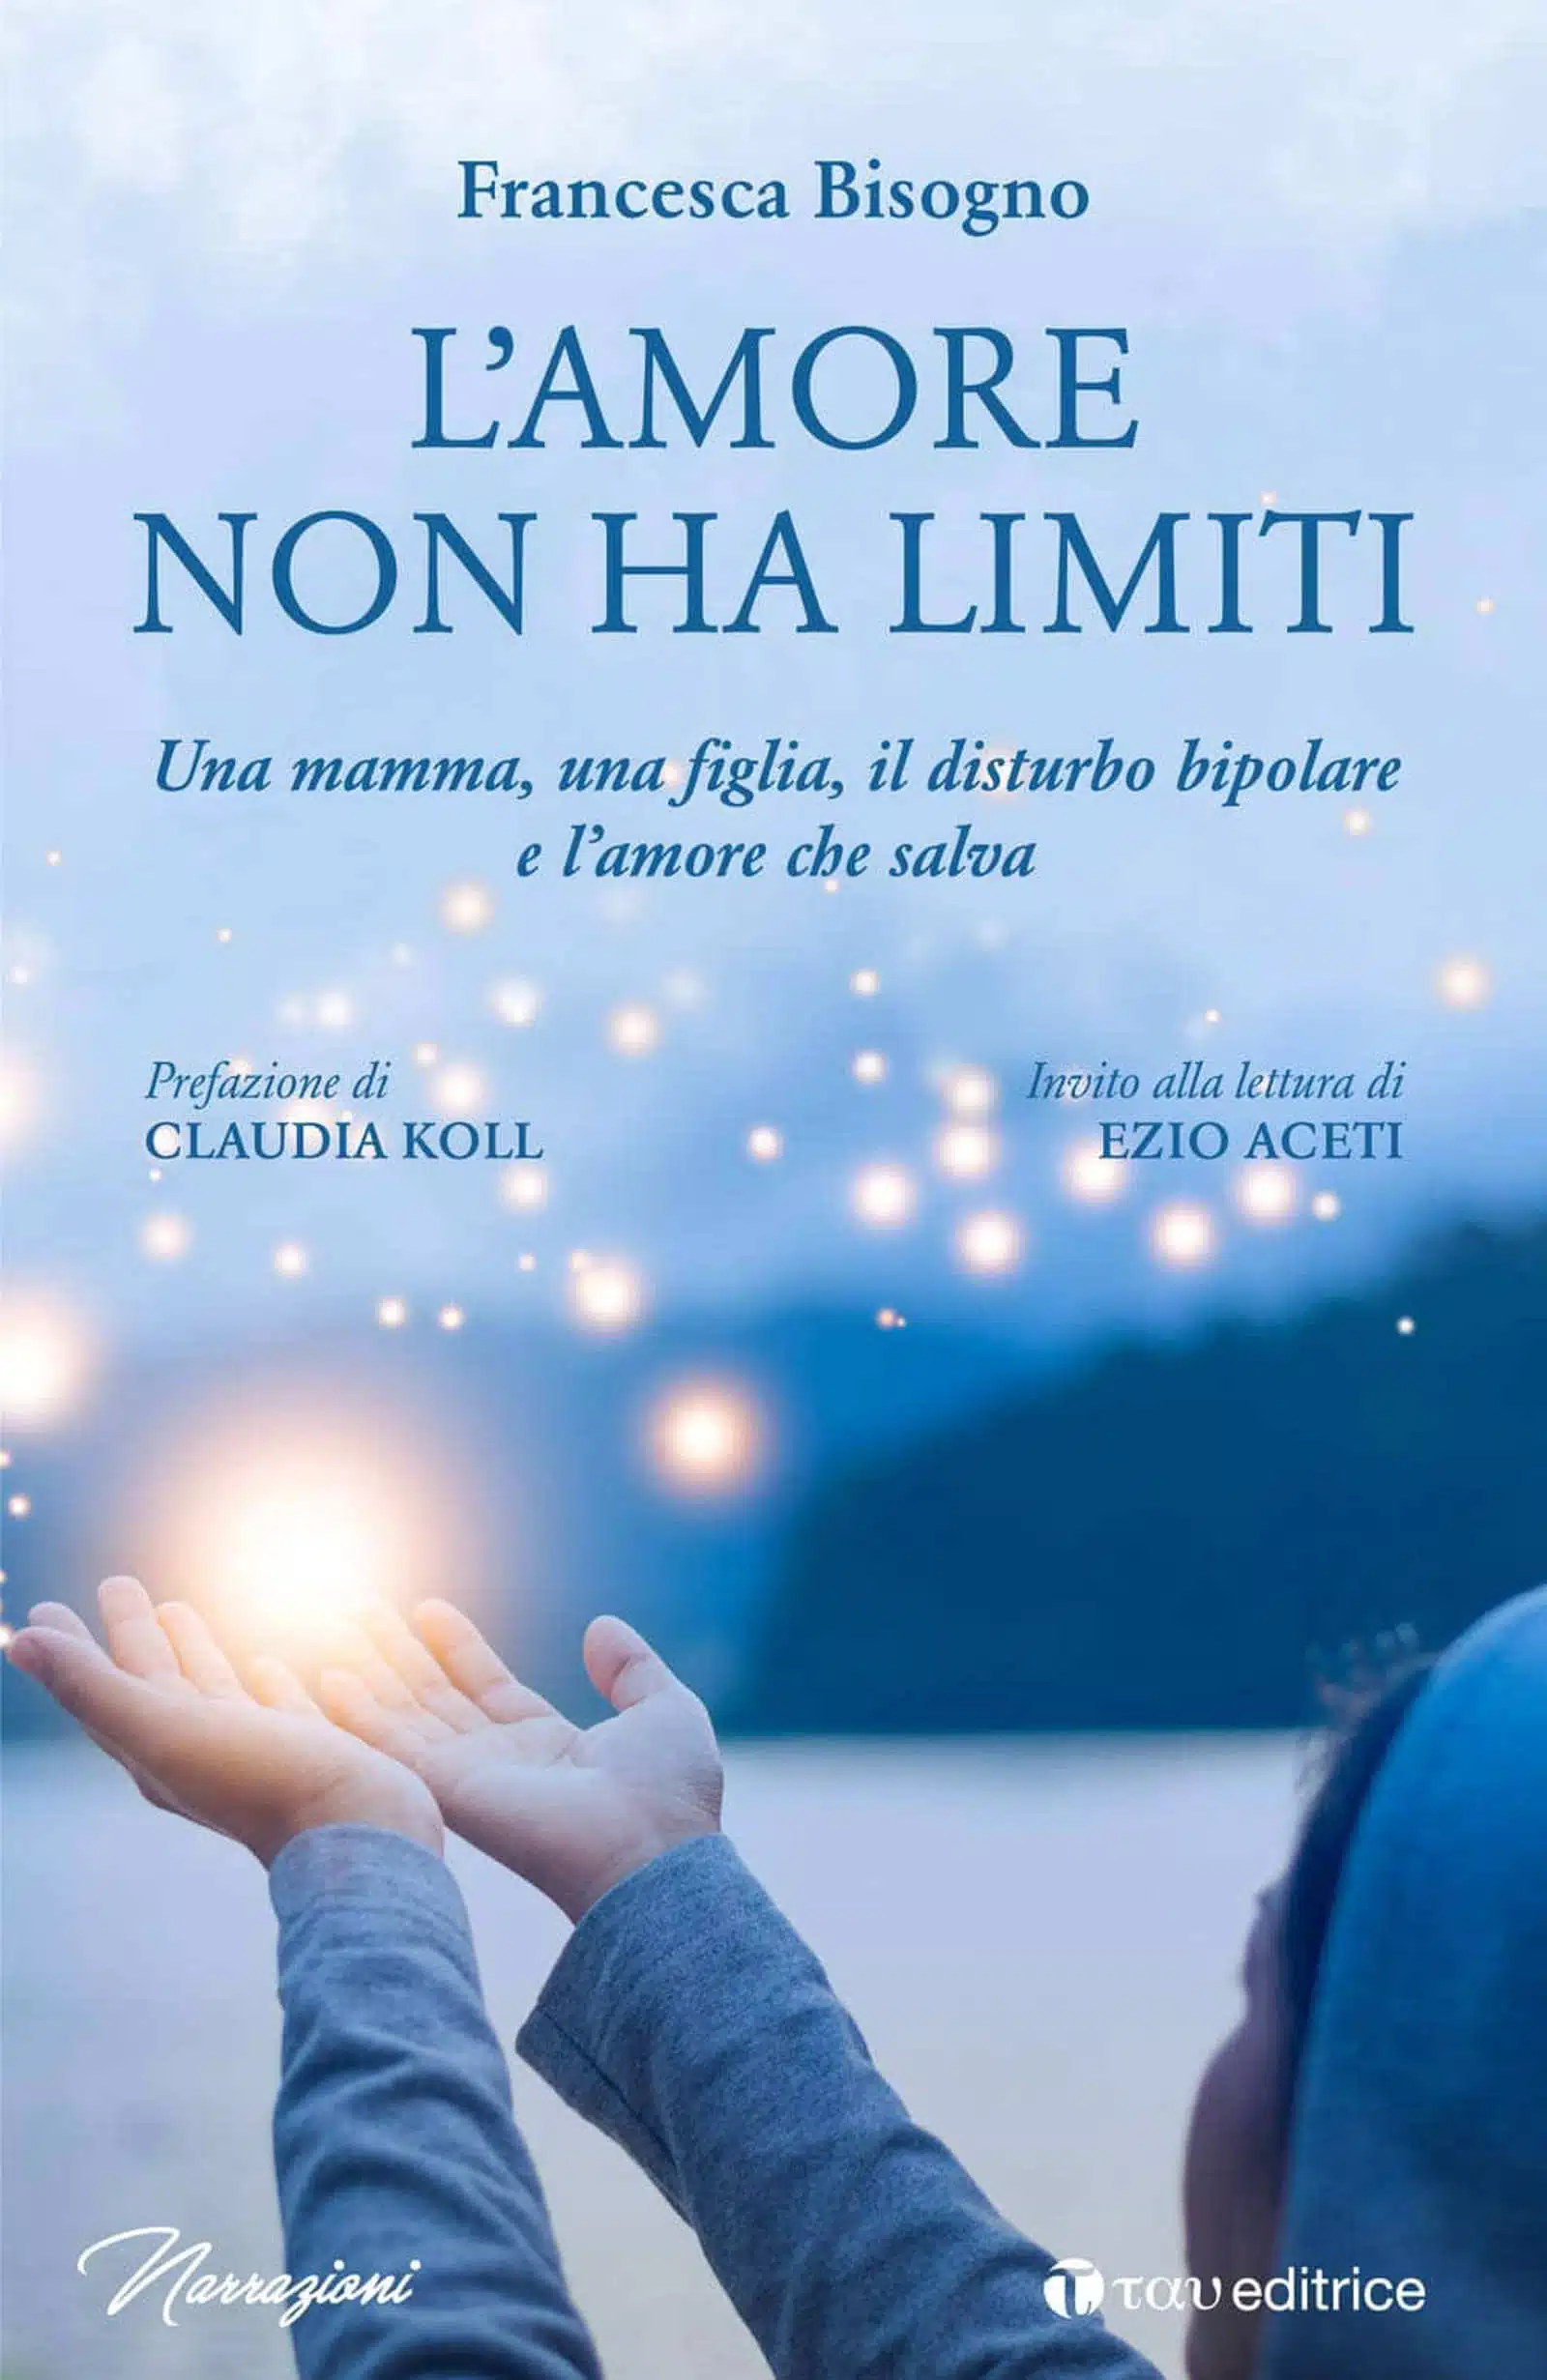 L amore non ha limiti 2021 di Francesca Bisogno Recensione del libro Featured